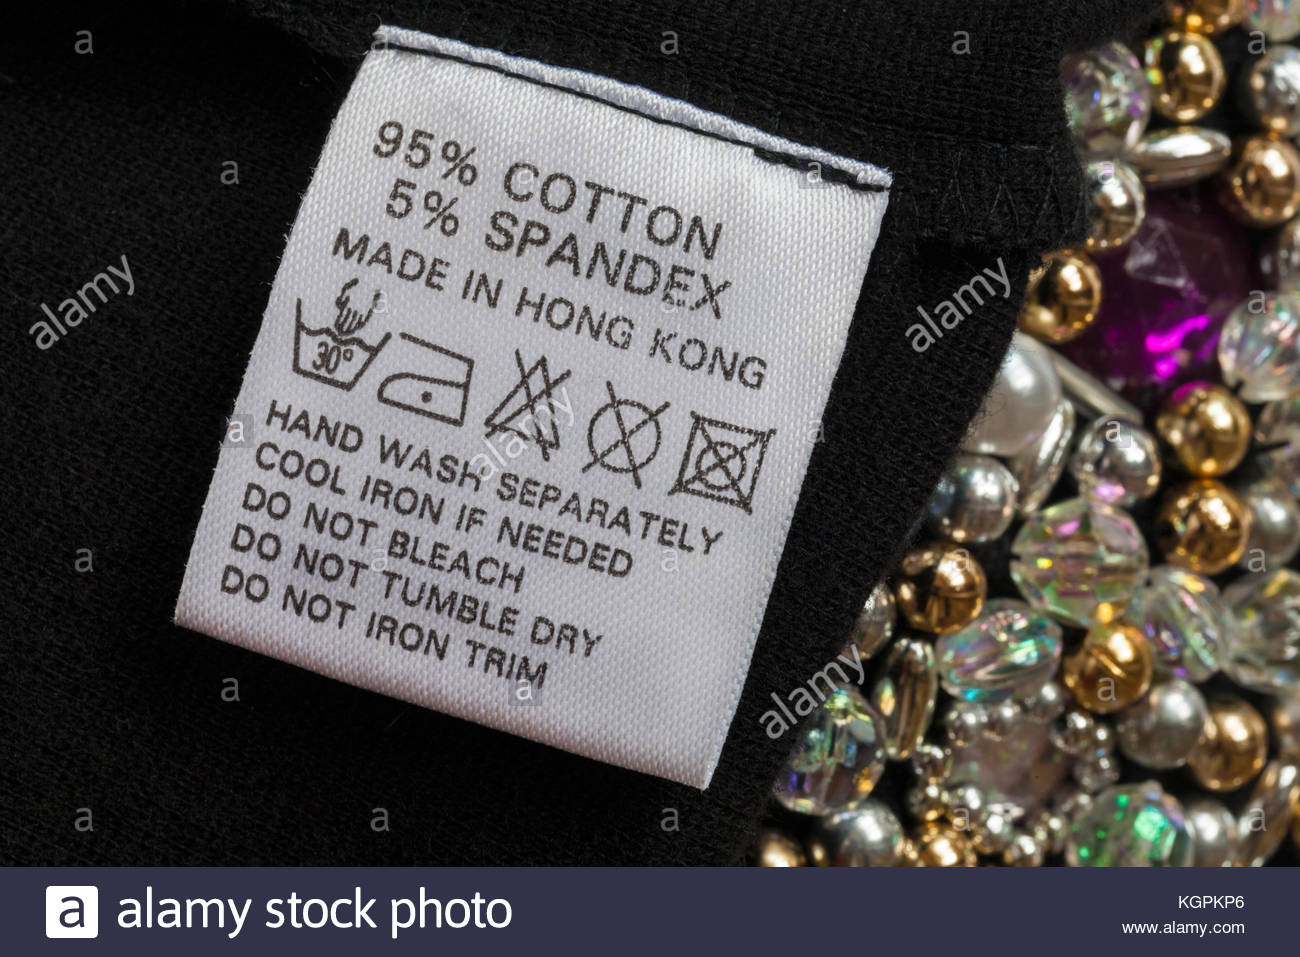 01 95 cotton 5 spandex label